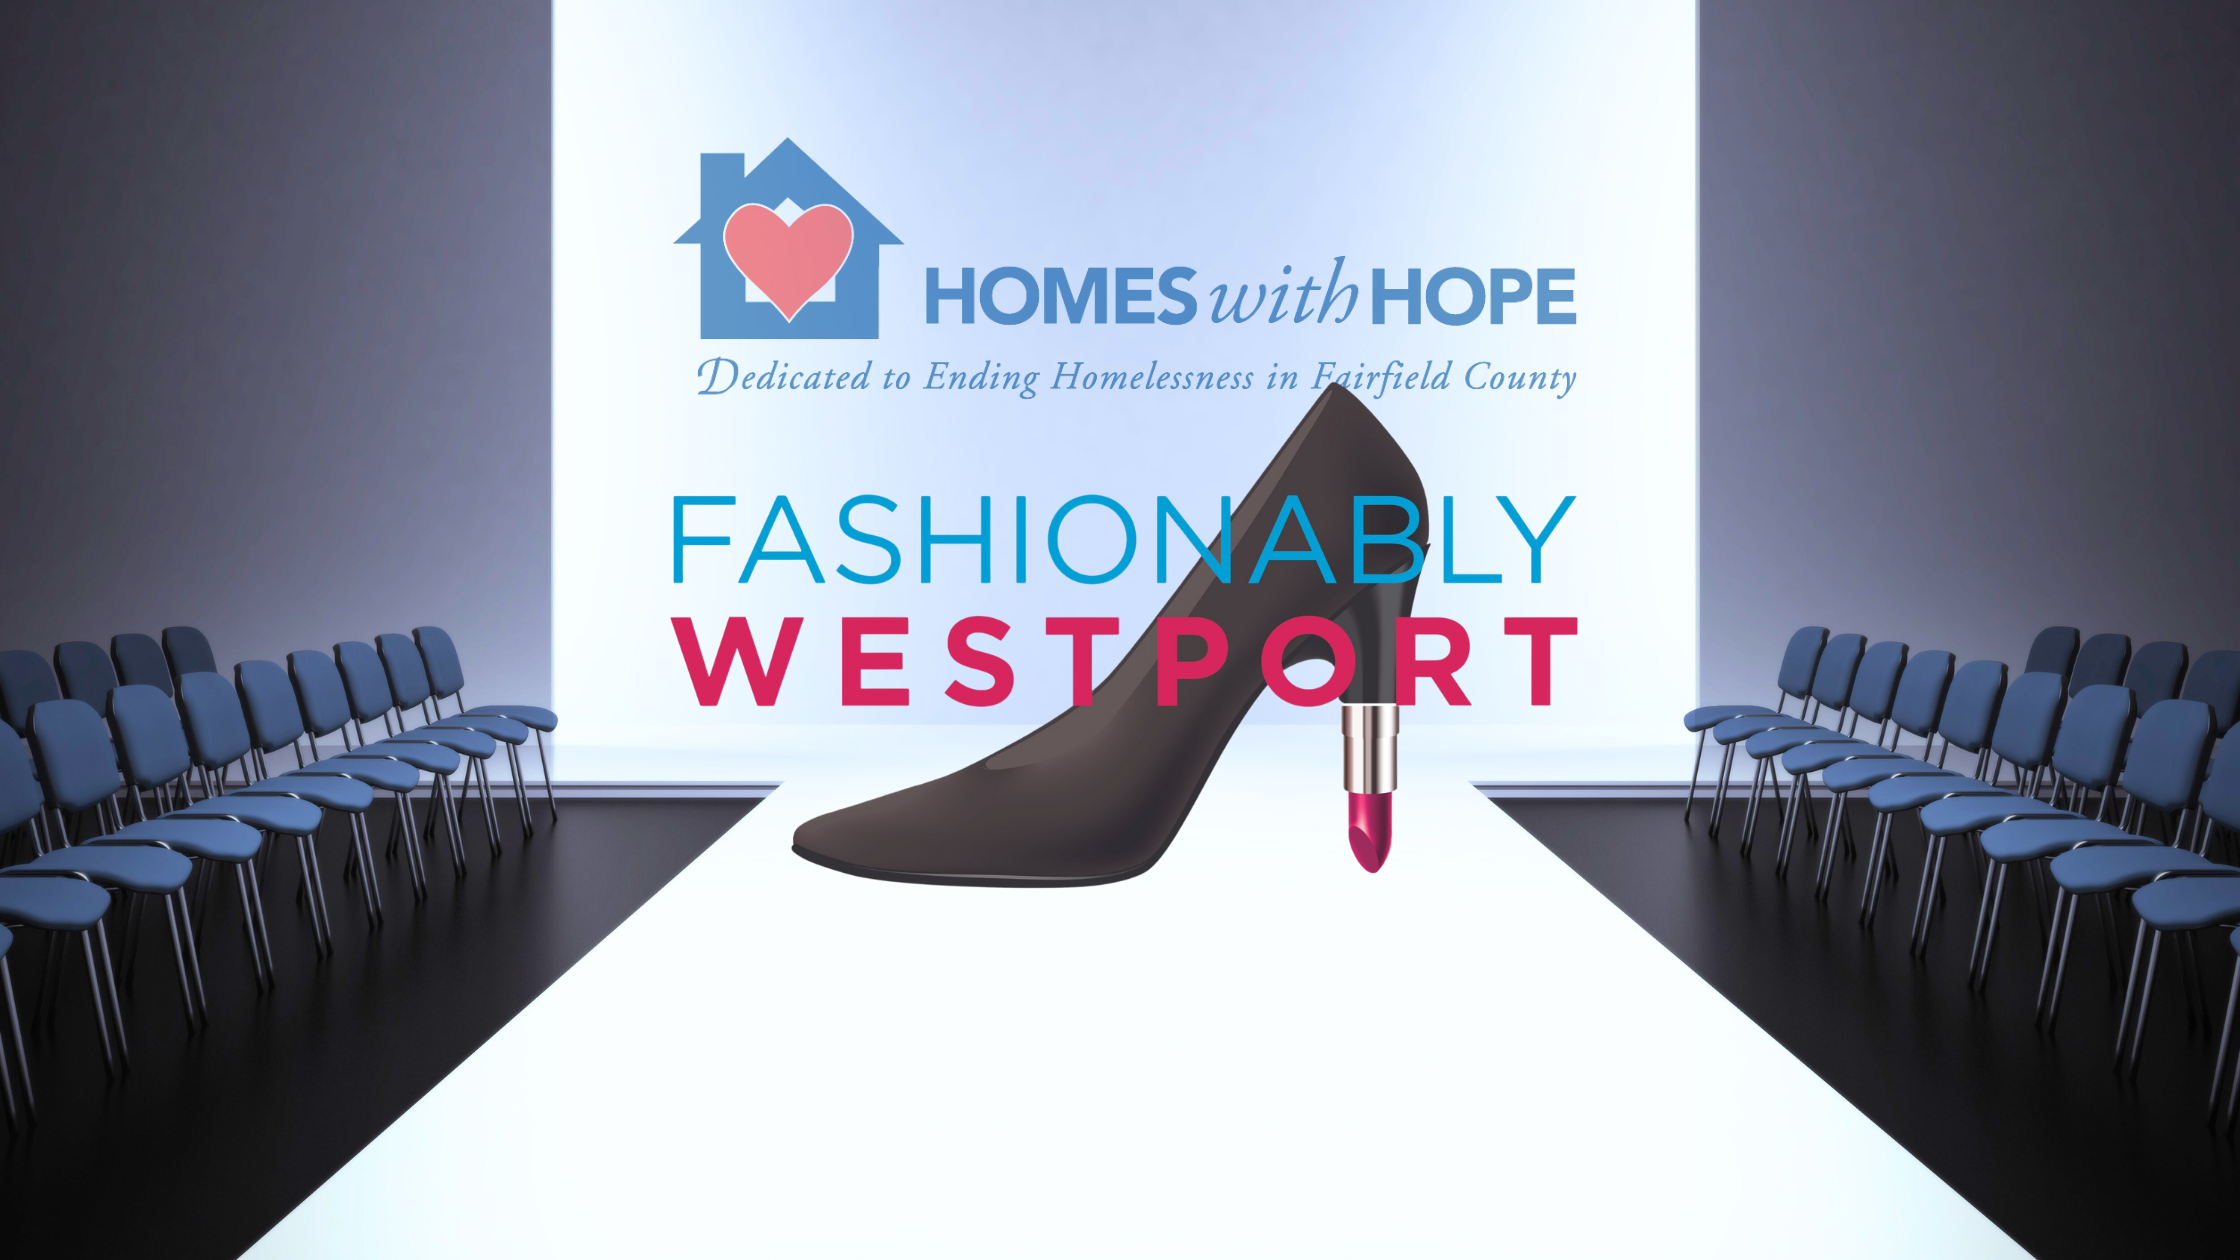 Annual Fashionably Westport Runway Show